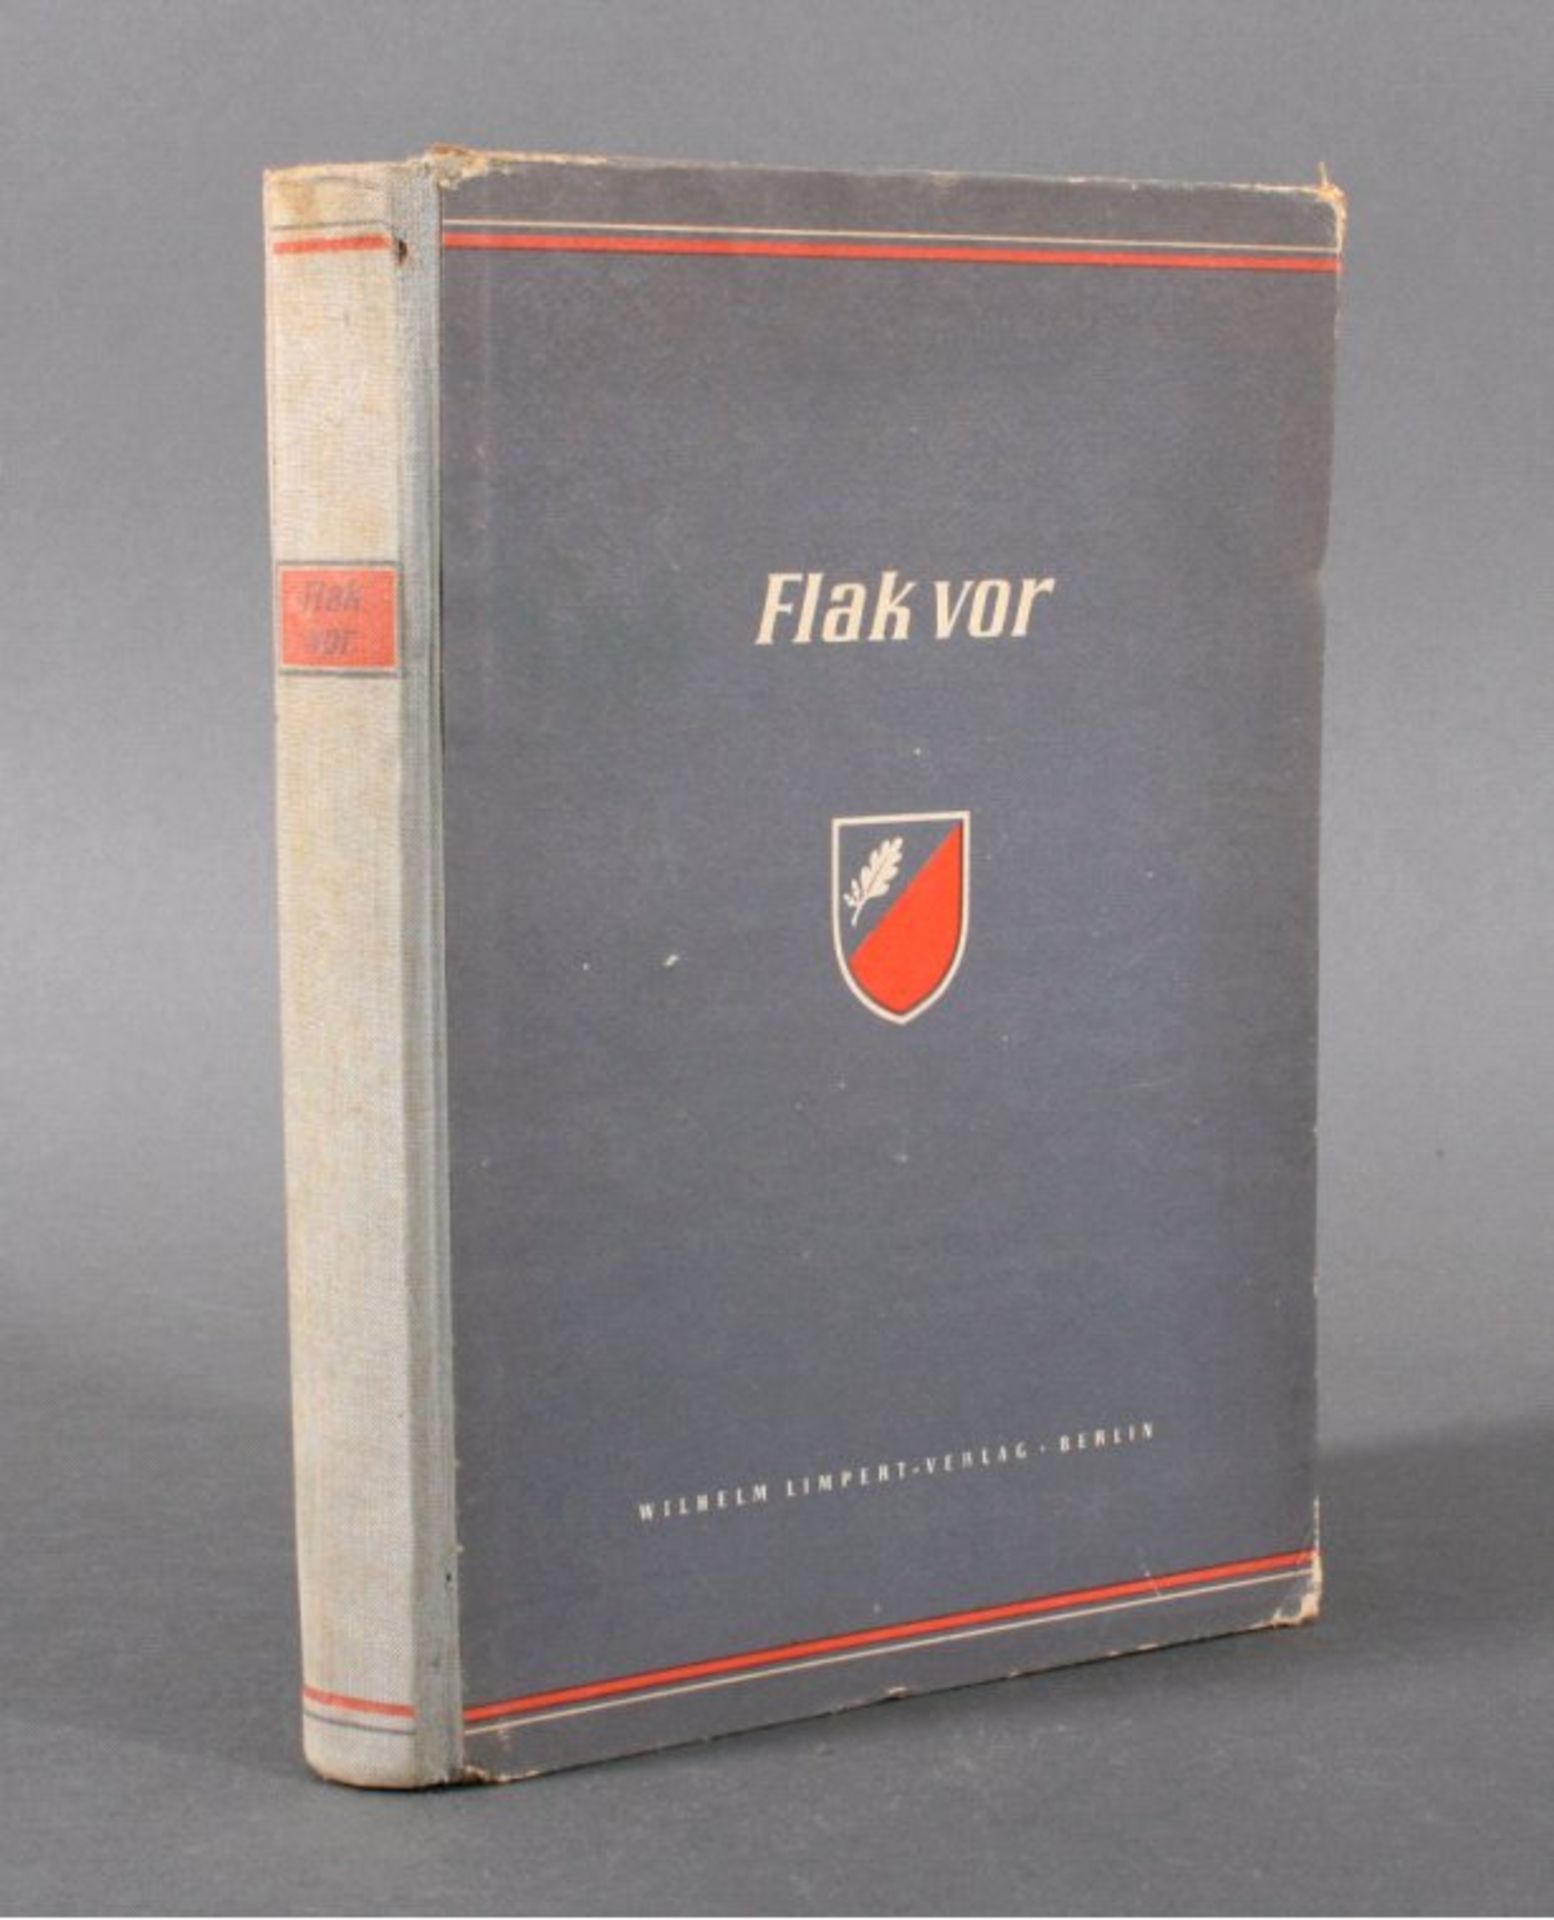 Flak vor! Mit unseren Panzern vom Bug bis vor die ToreMoskaus. Berlin, Wilhelm Limpert Verlag, 1943.